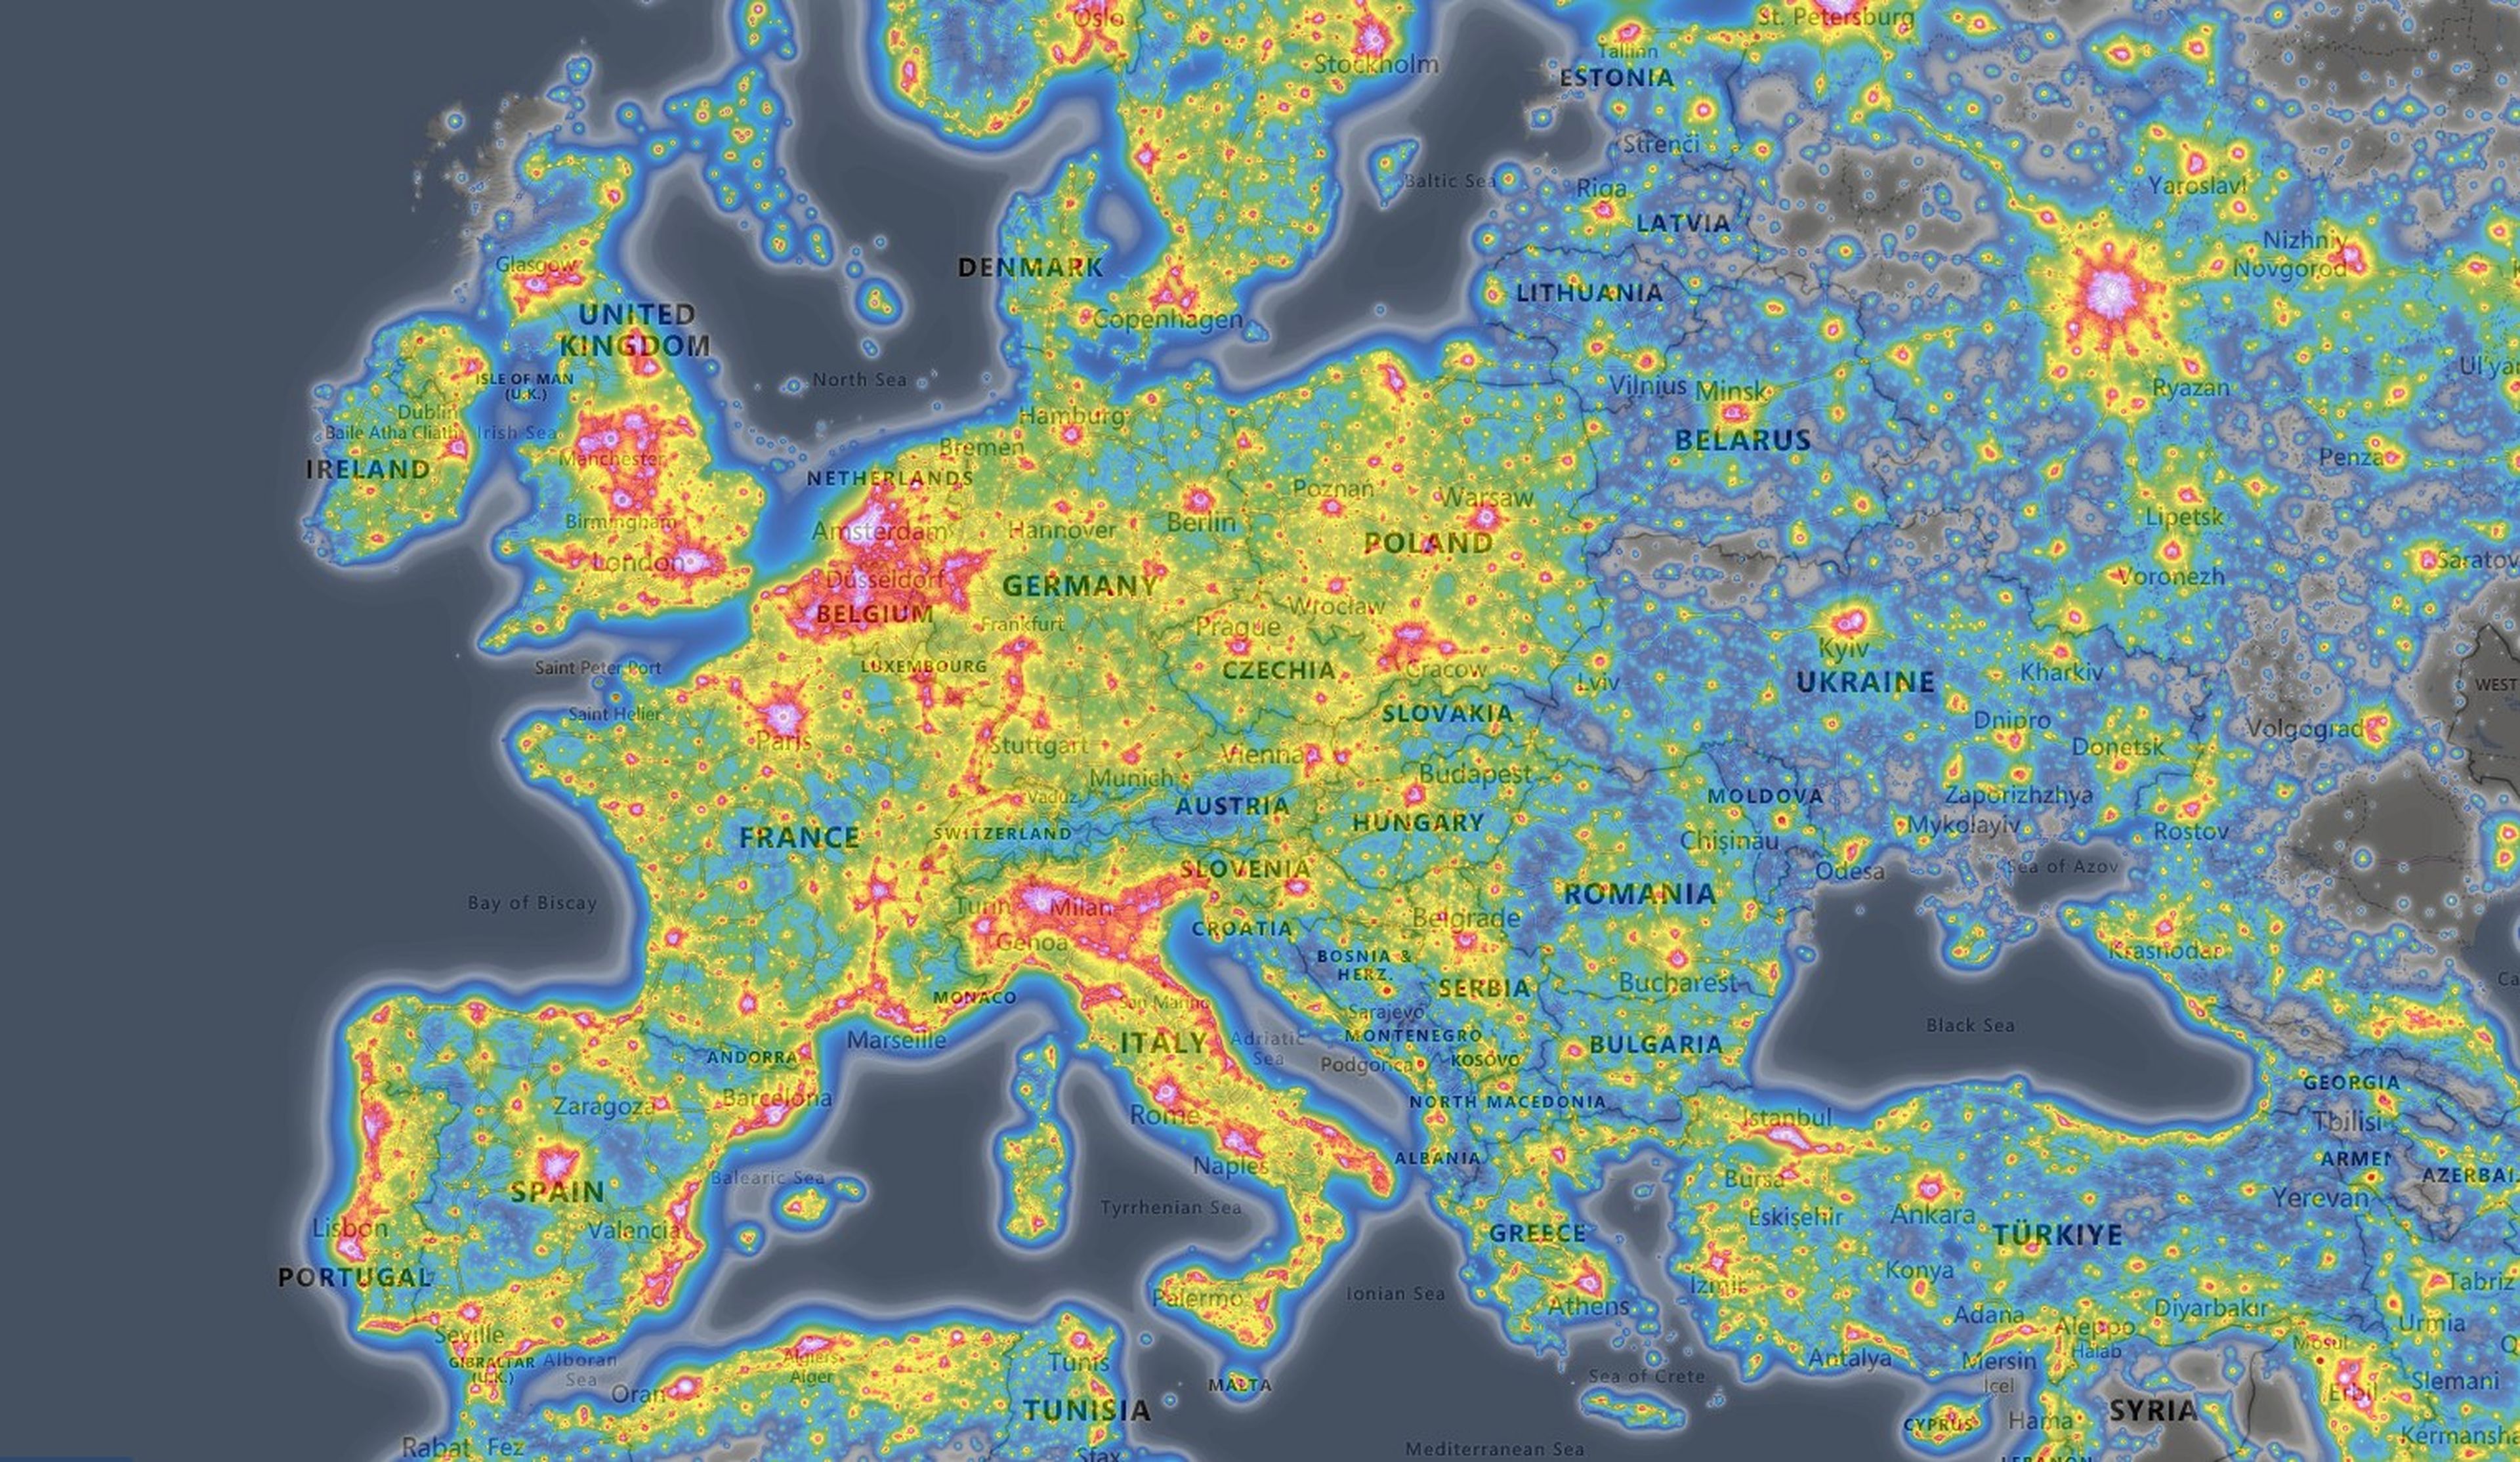 El mapa de la contaminación lumínica en Europa, los peores lugares para ver estrellas